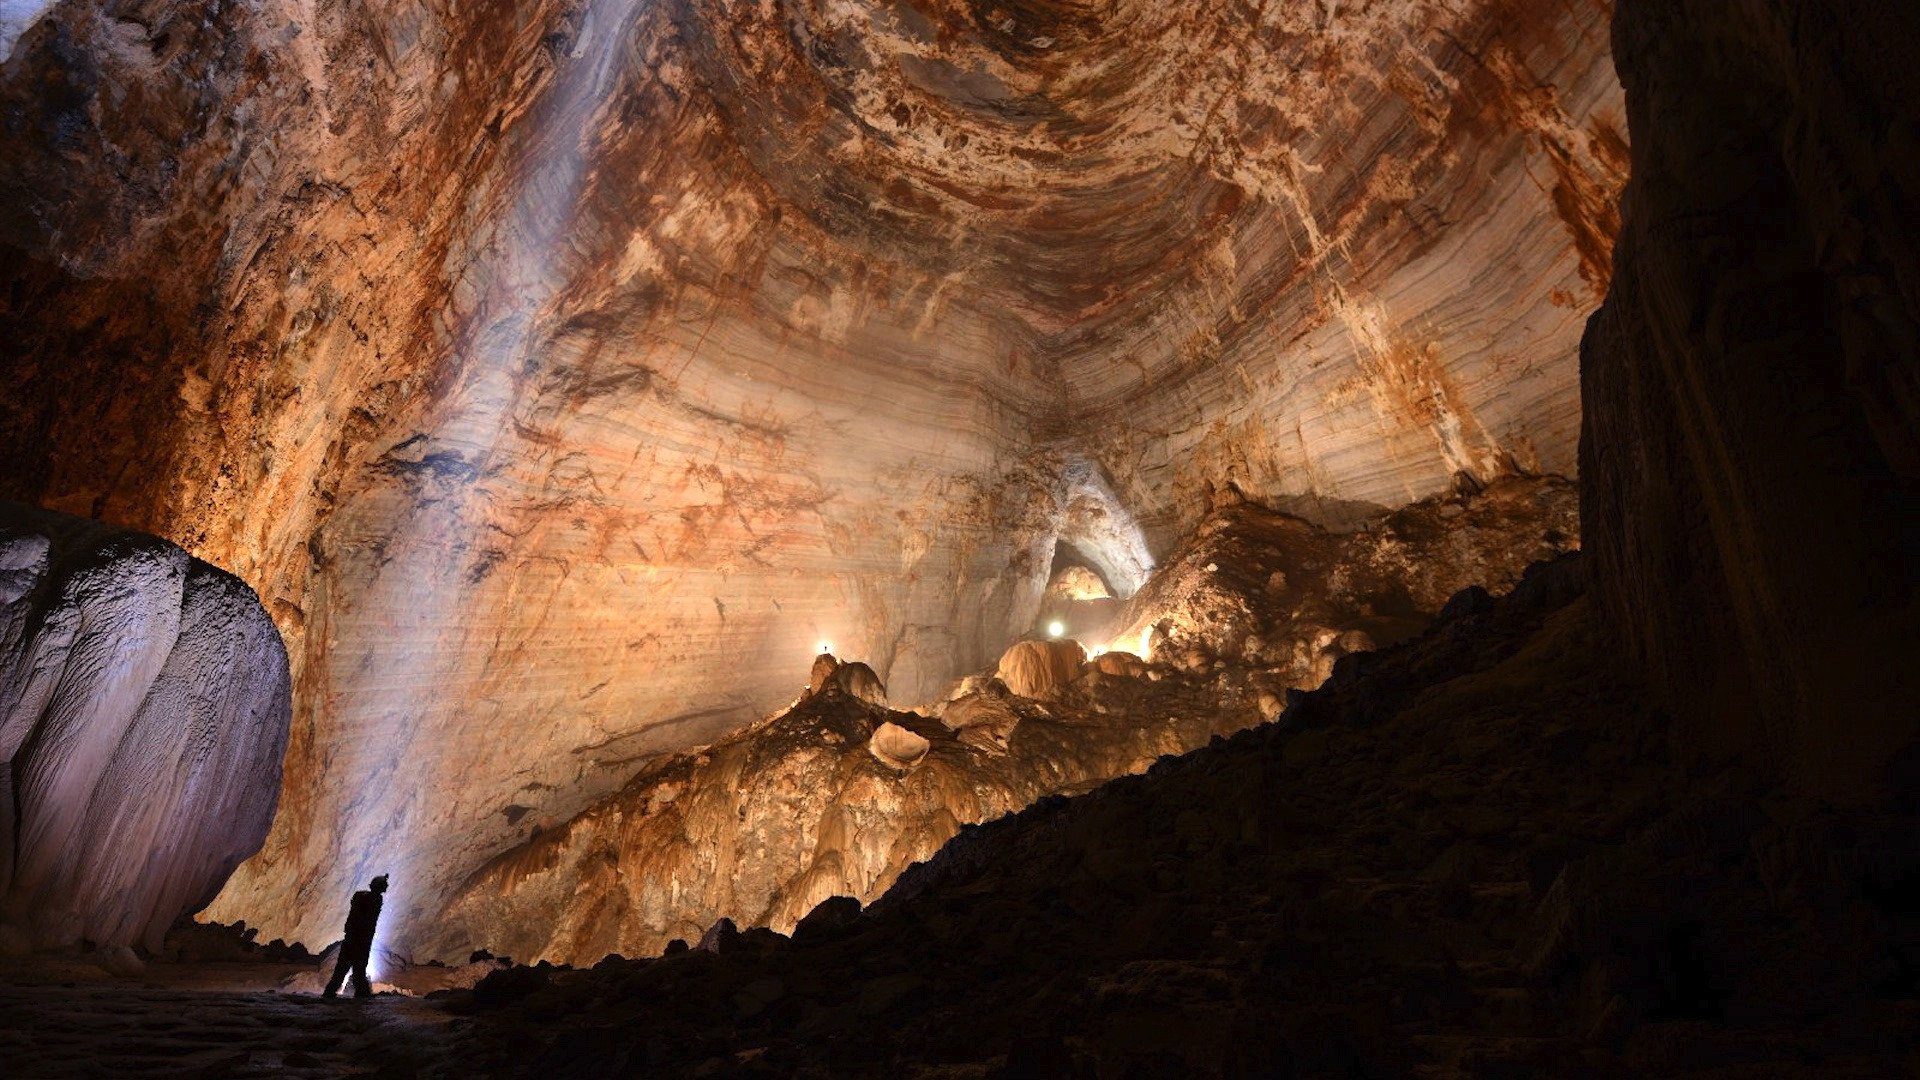 库鲁伯亚拉洞穴